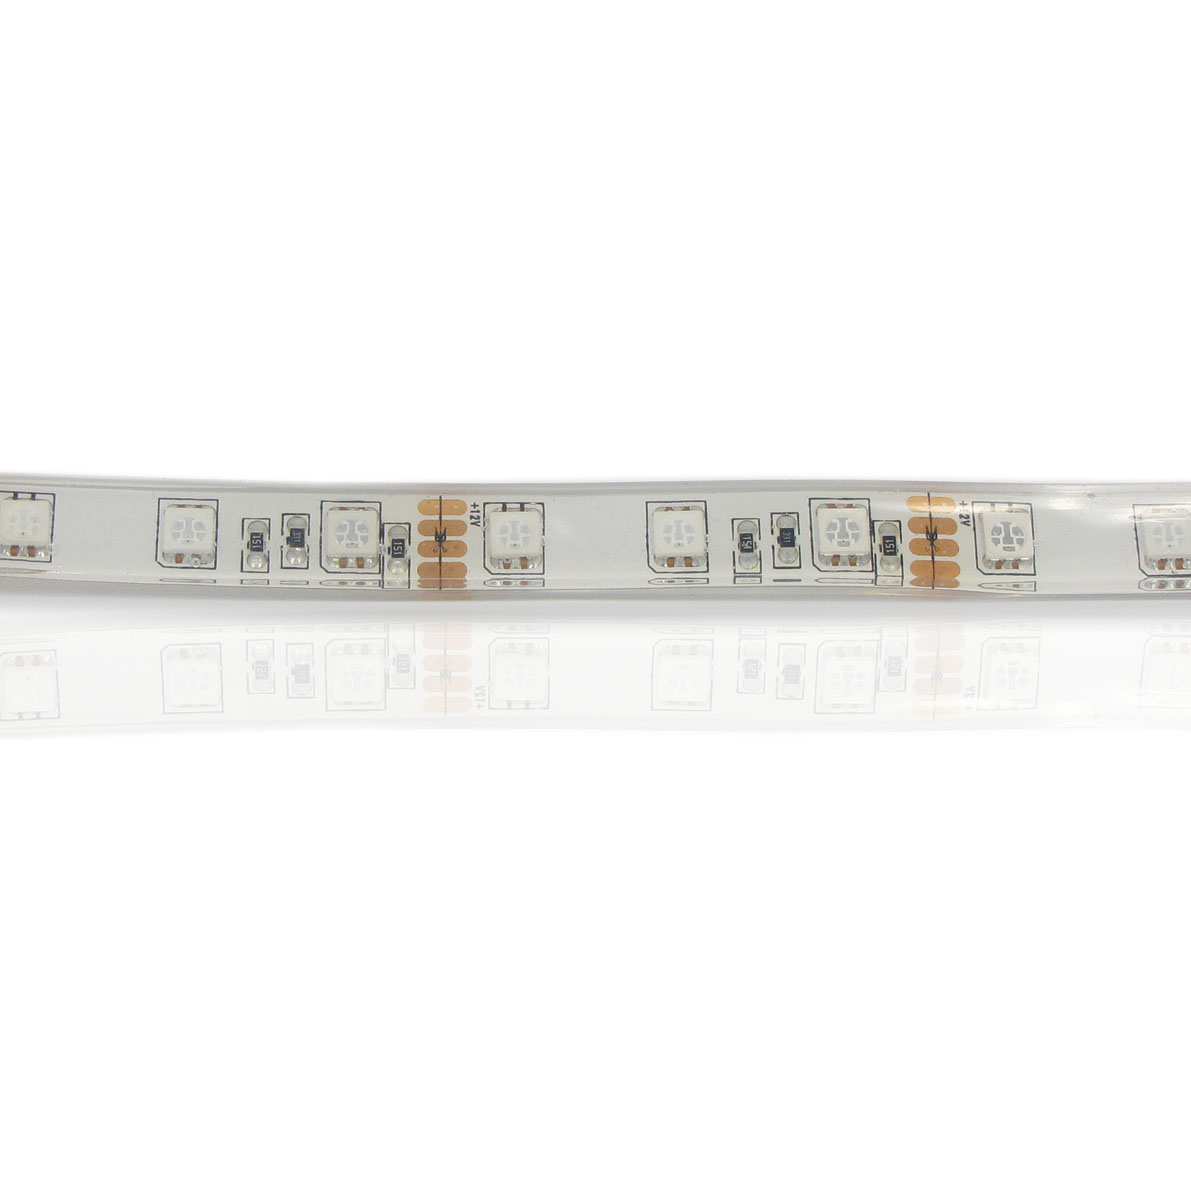 светодиодная лента standart pro class, 5050, 60 led/m, rgb, 12v, p124, ip68, артикул 30123